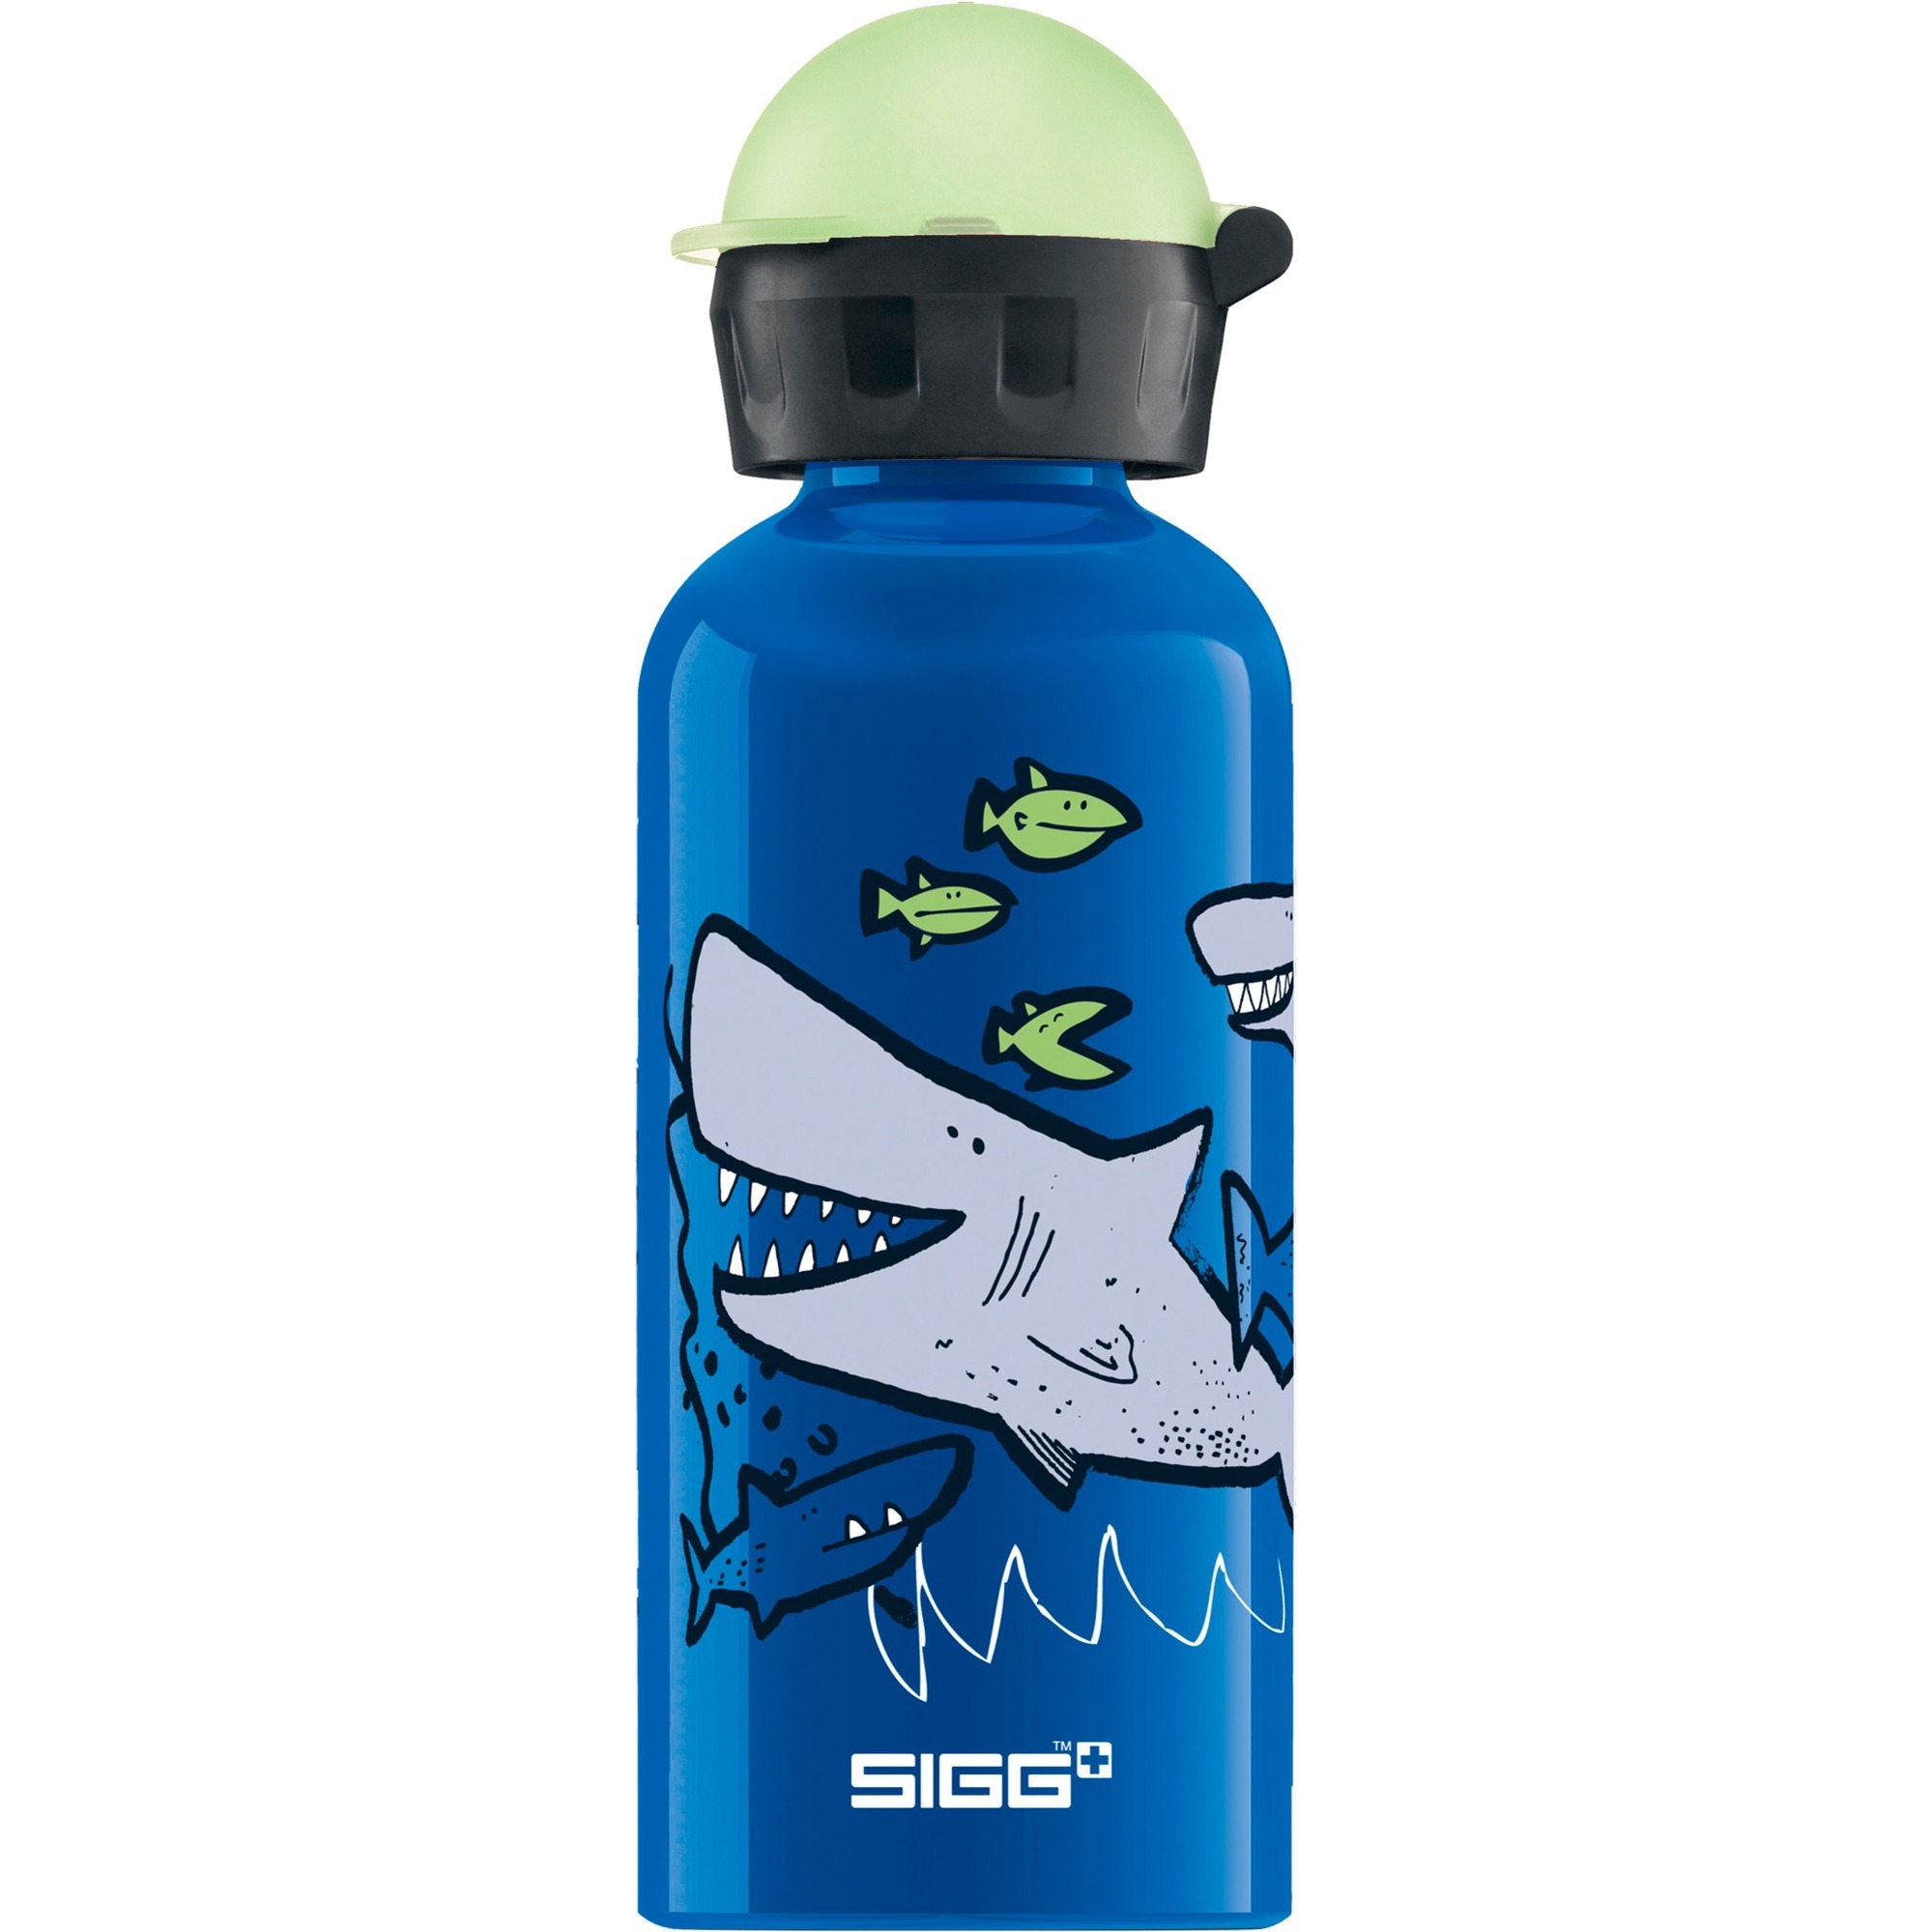 Image of Alternate - Alu Sharkies 0,4 Liter, Trinkflasche online einkaufen bei Alternate